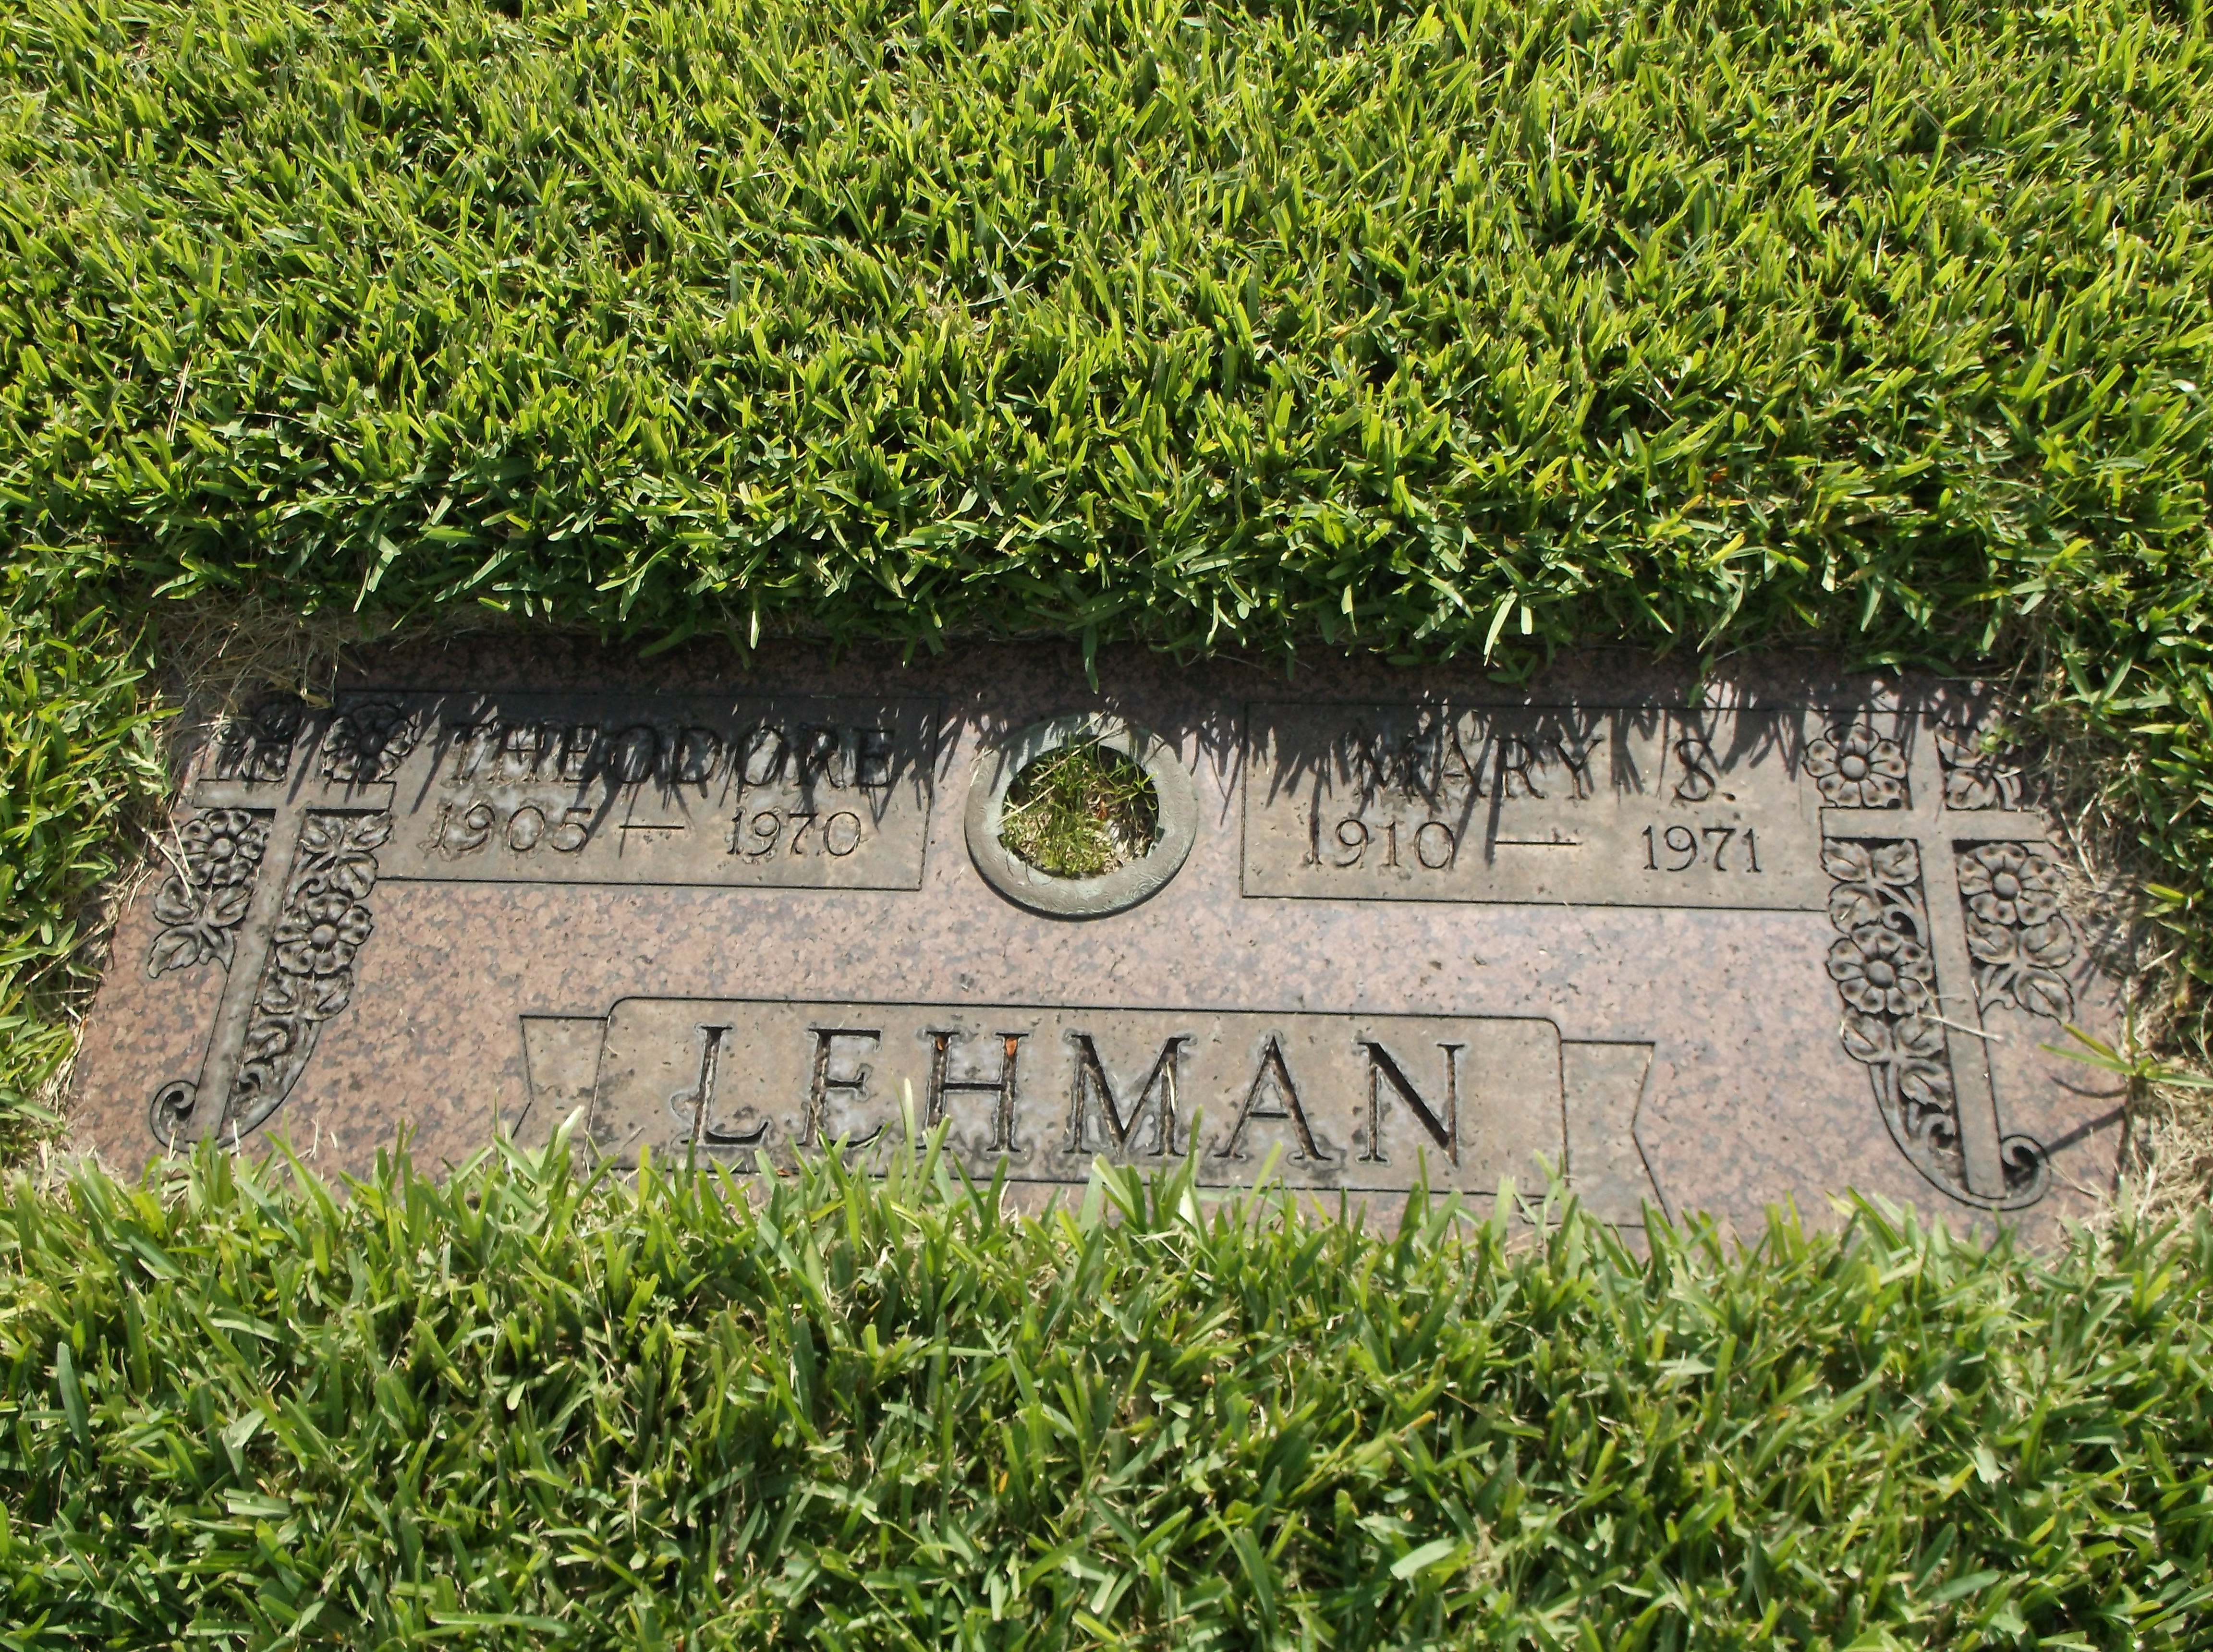 Mary S Lehman